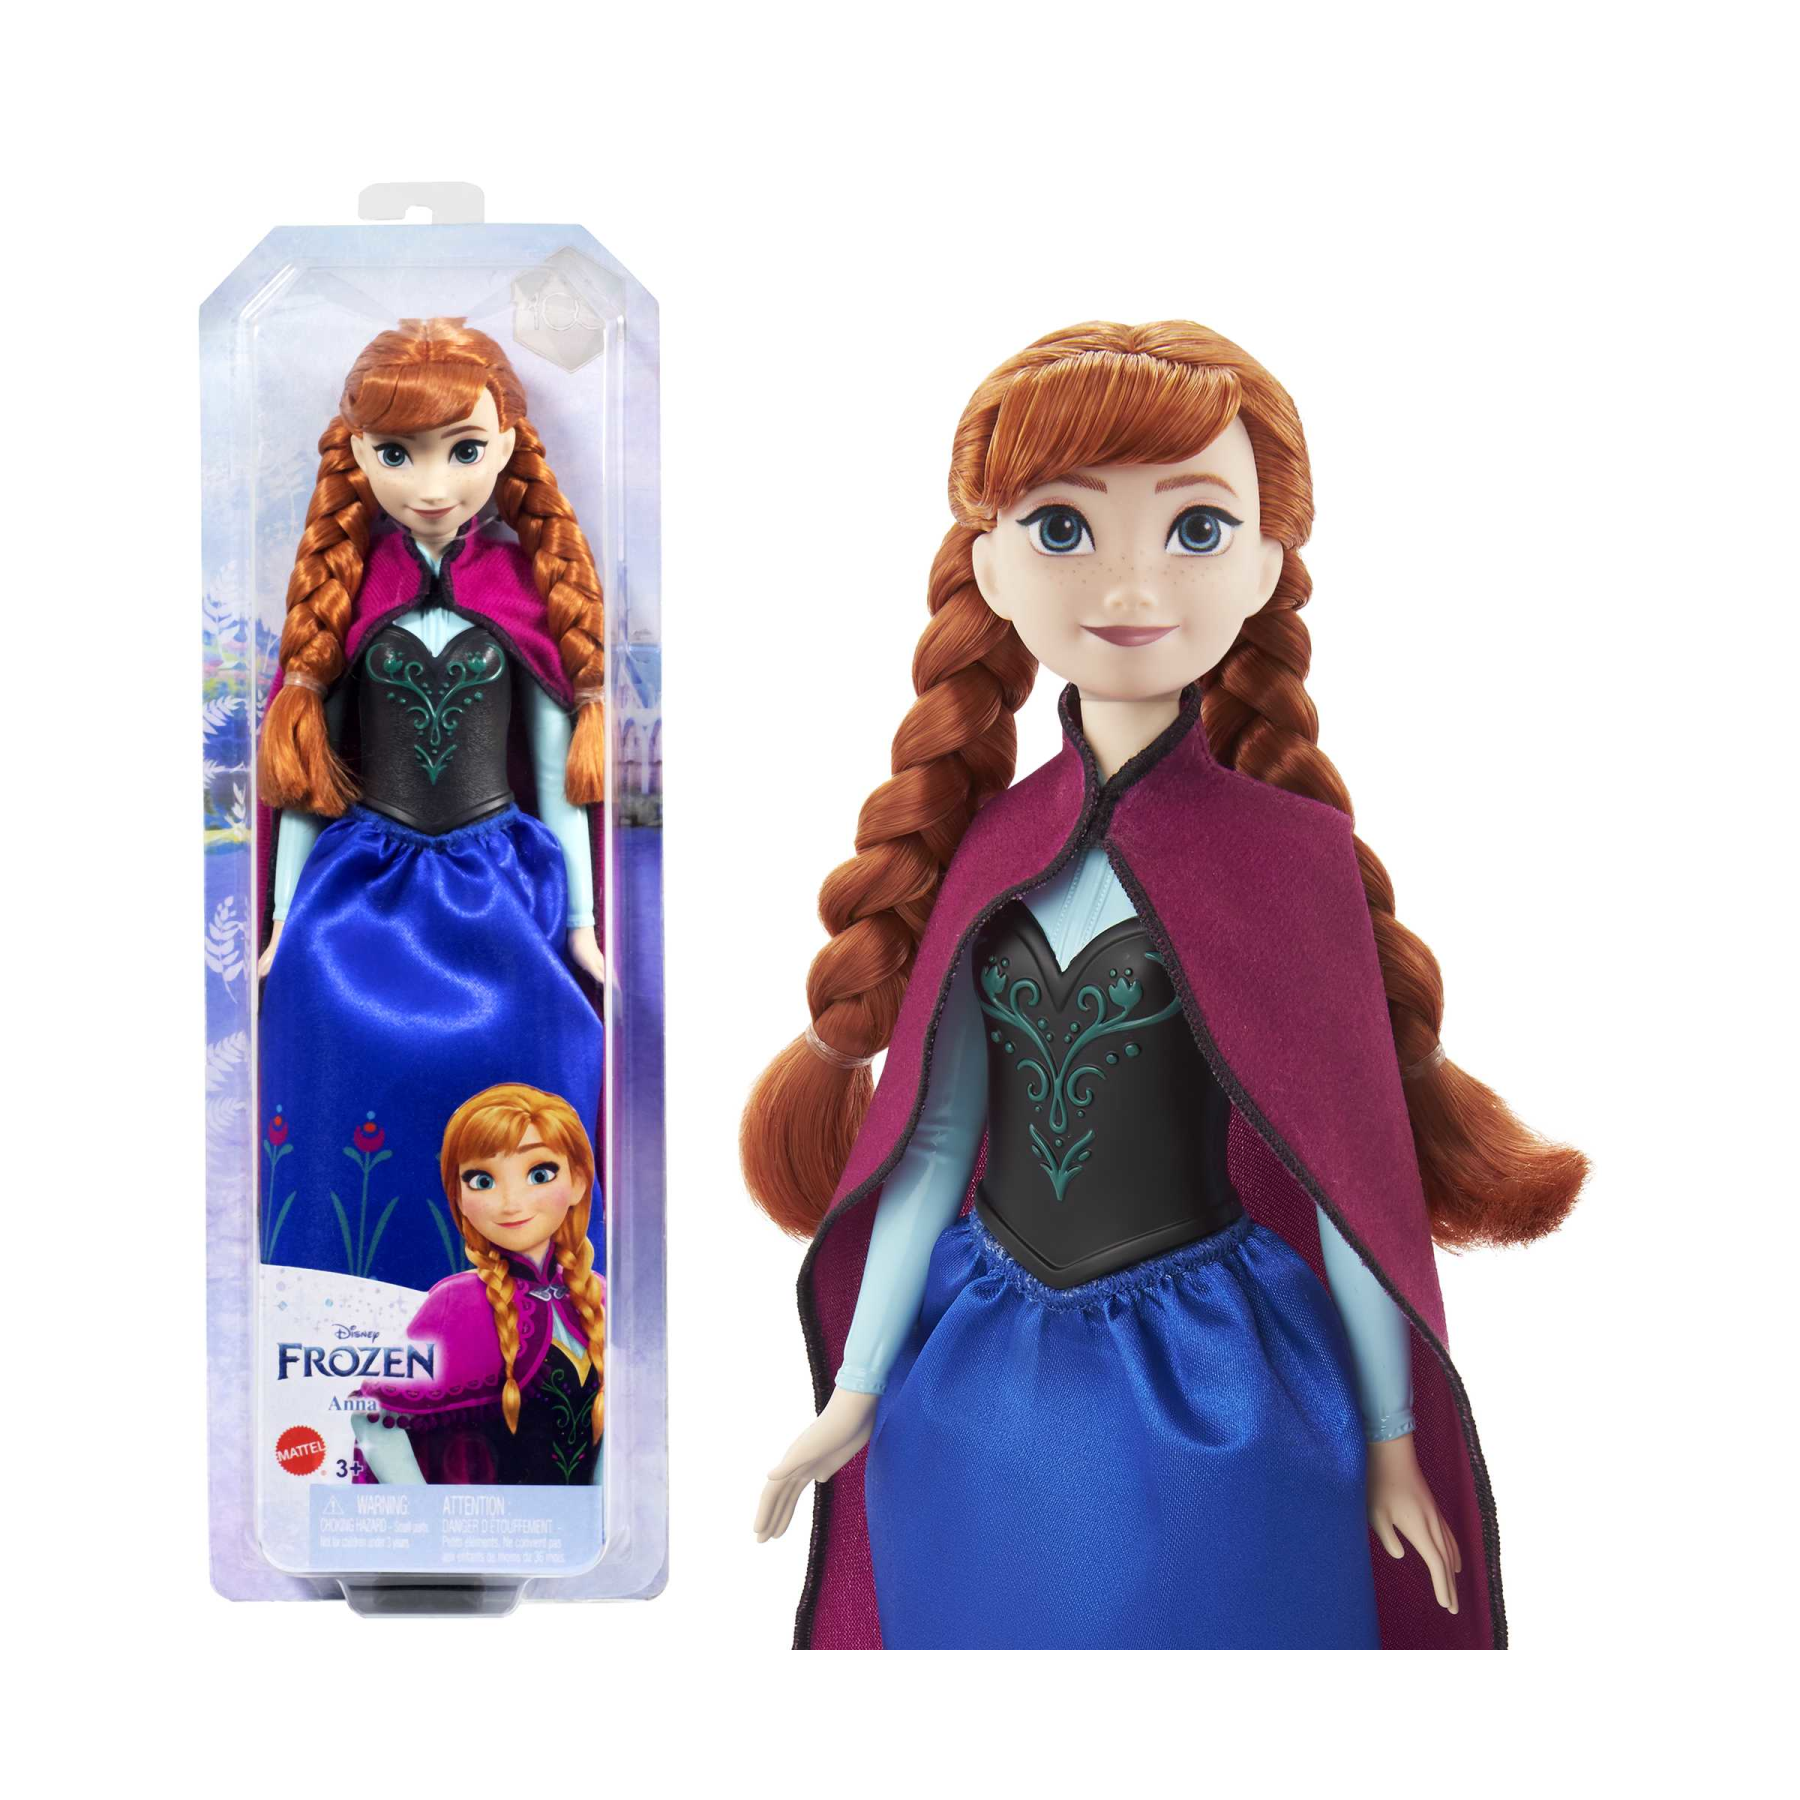 Disney frozen - anna, bambola con abito elegante e accessori ispirati al film dsney frozen 1, giocattolo per bambini, 3+ anni, hlw49 - DISNEY PRINCESS